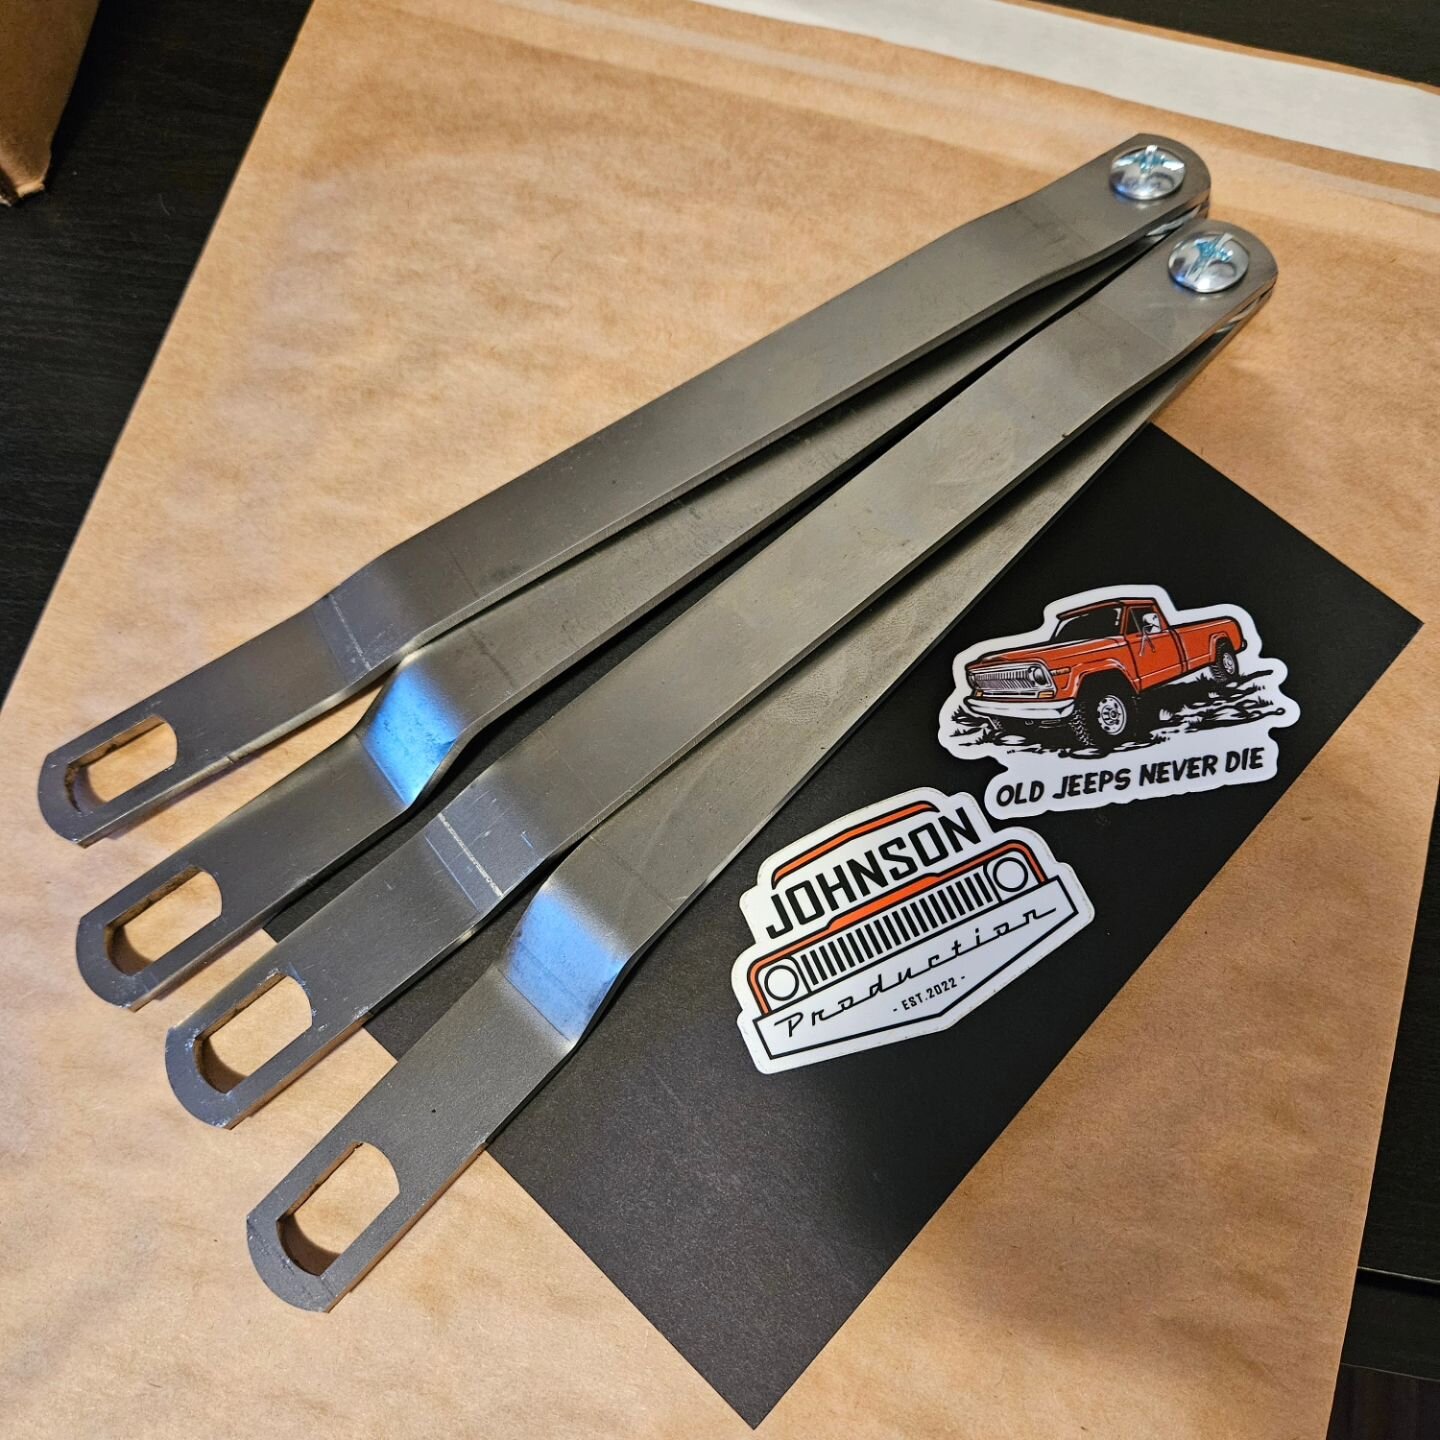 Jtruck tailgate straps 🤝 Jtruck stickers

Get them at Johnsonproductionjp.com 

#FullSizeJeep #Wagoneer #Cherokee #J10 #J20 #Jeep #JeepSJ #AMC #FSJ #GW #americanmotors #grandwagoneer #AMCEagle #Eagle #Eaglesx4 #Cherokeechief